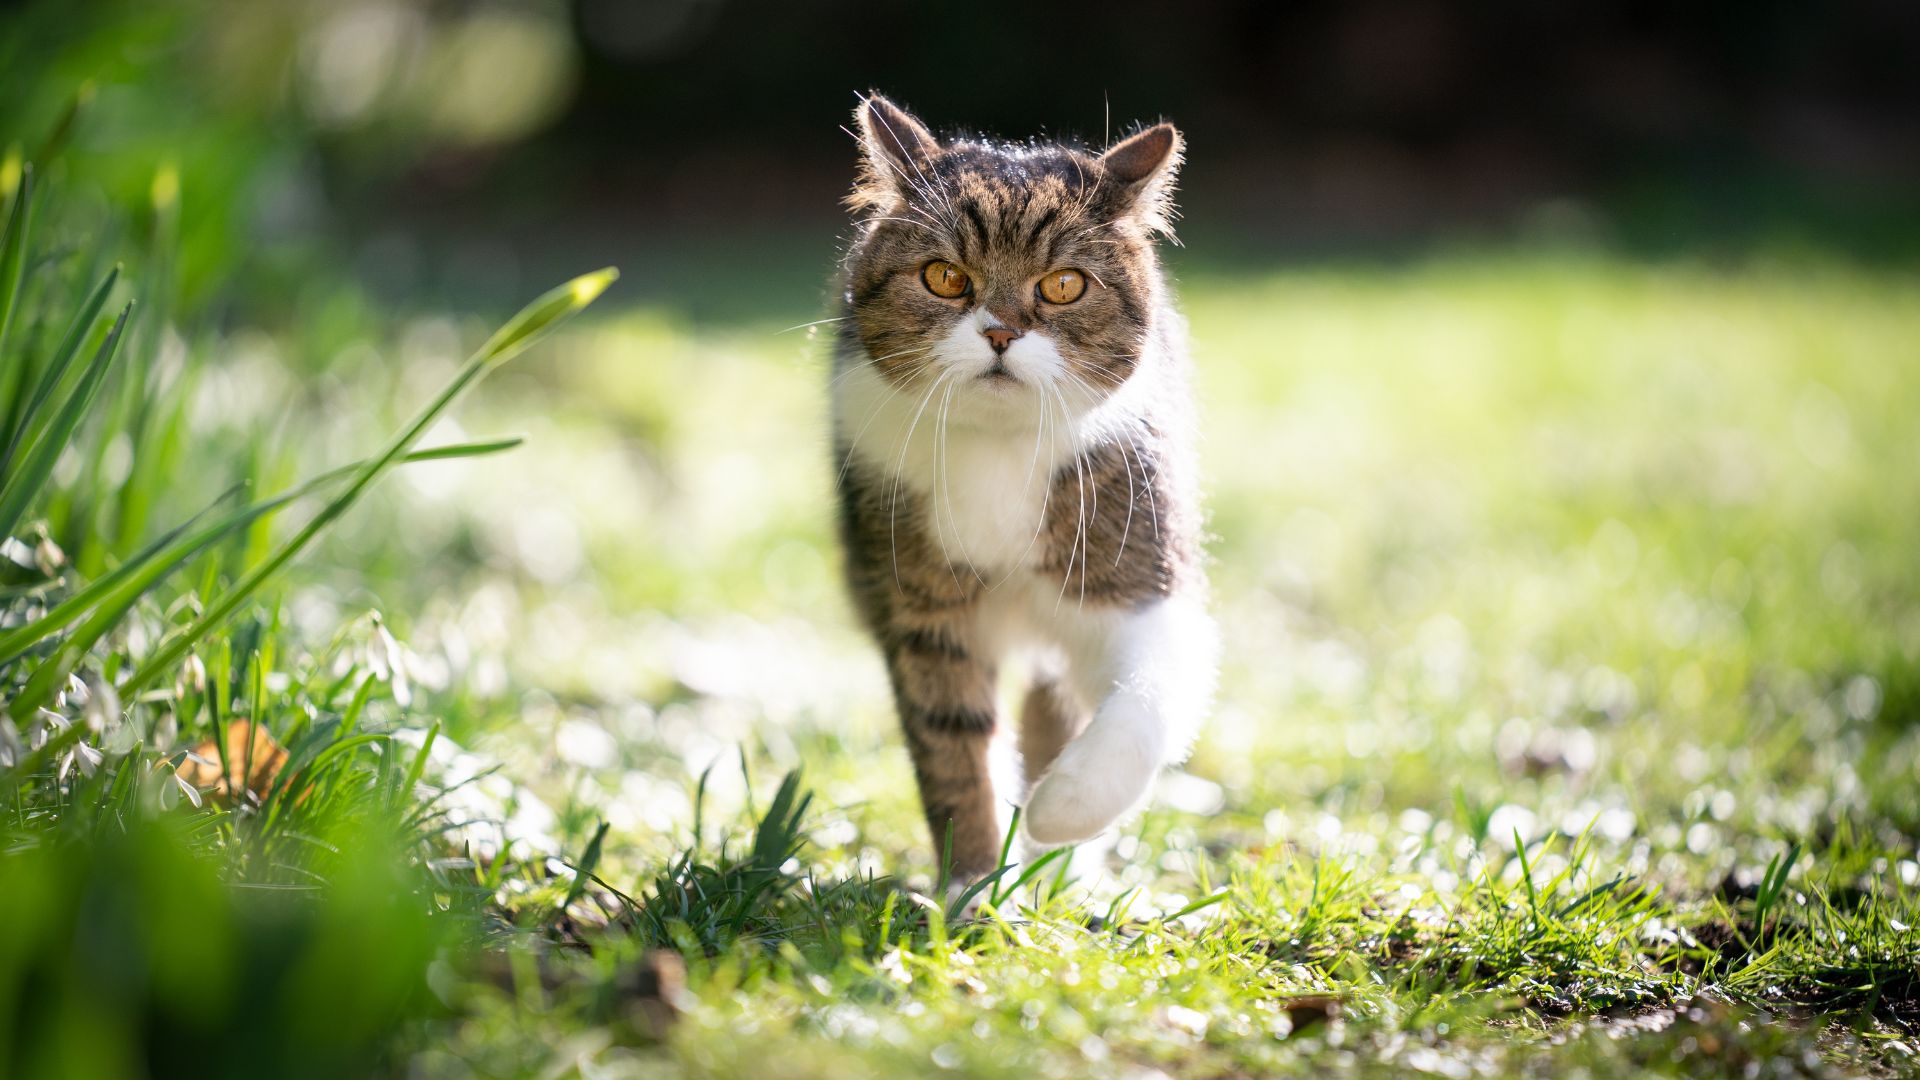 striped cat walking in grass